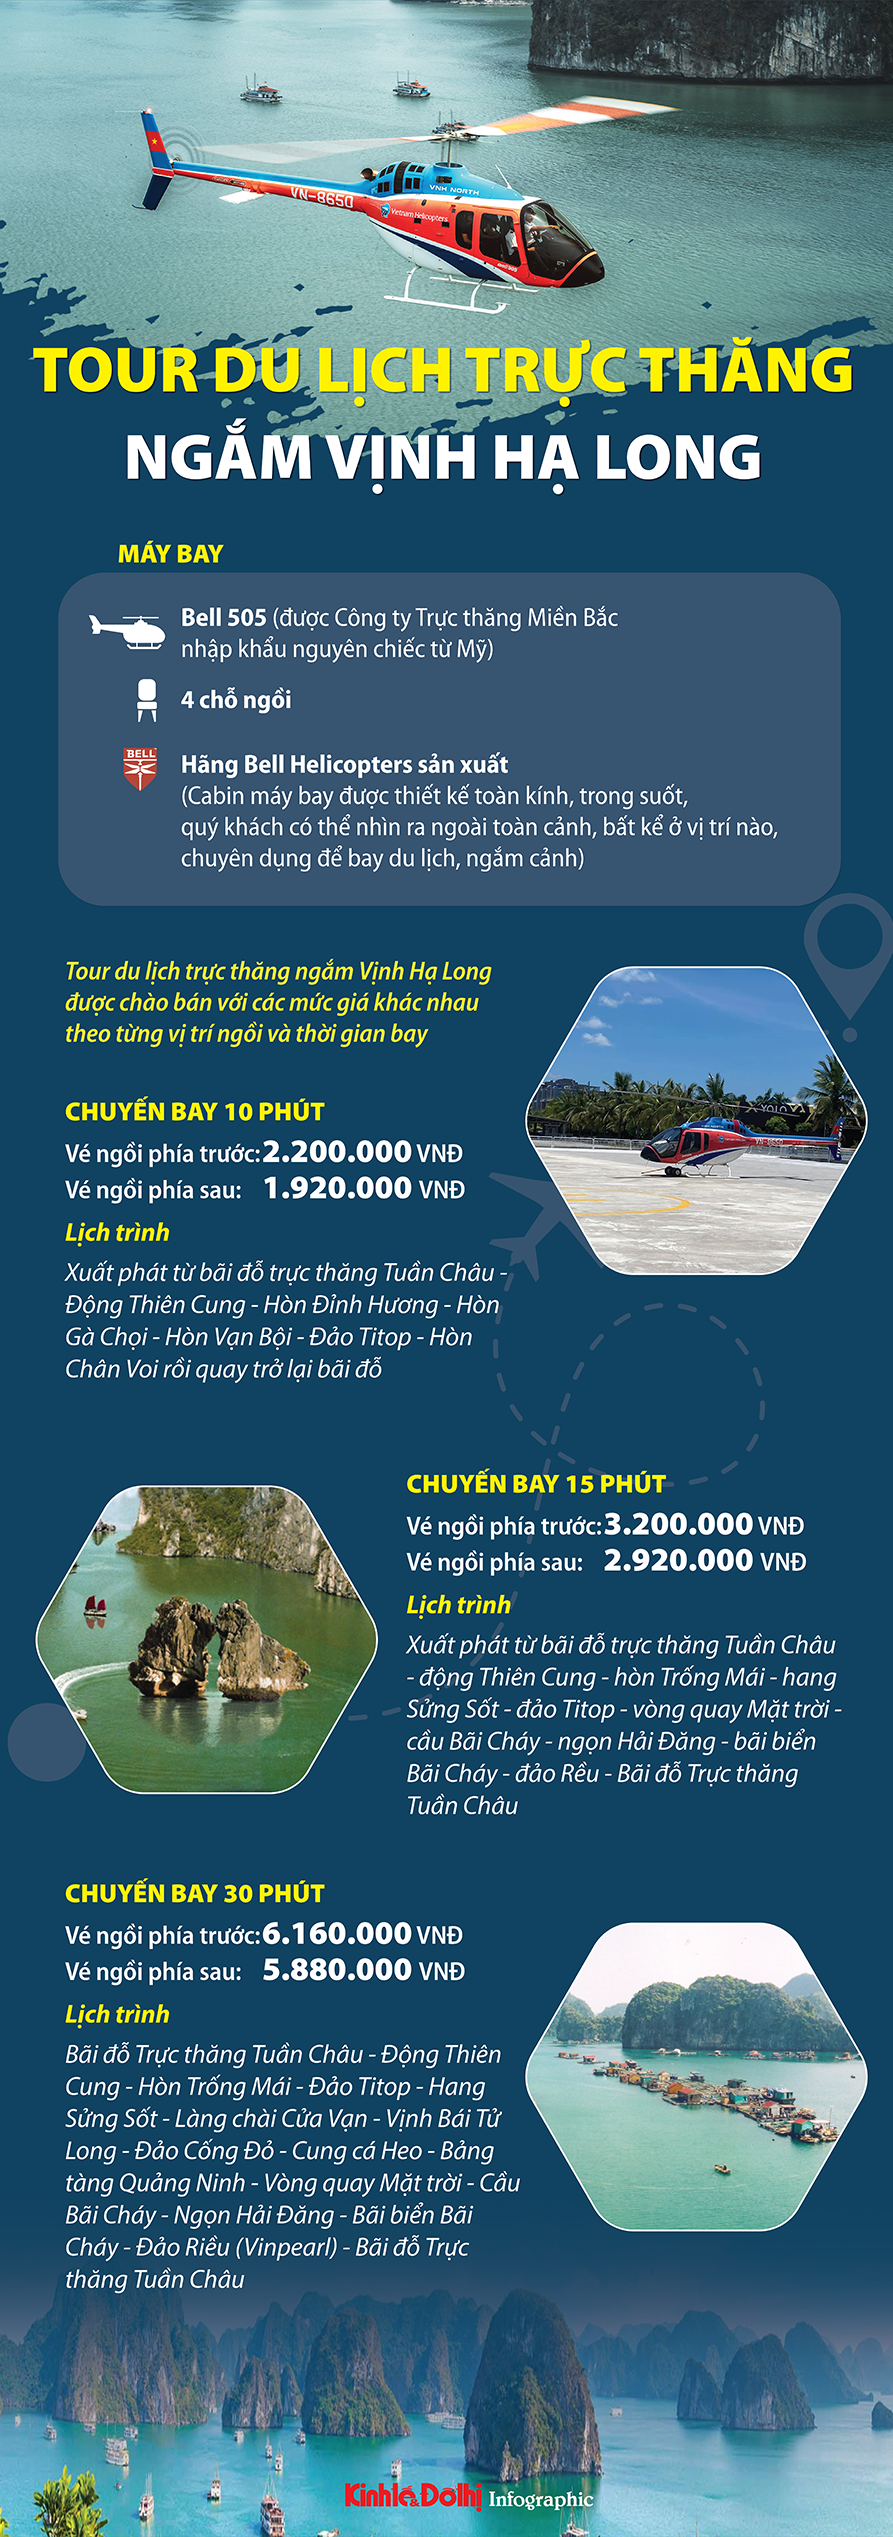 "Choáng" giá tour du lịch trực thăng ngắm Vịnh Hạ Long - Ảnh 1